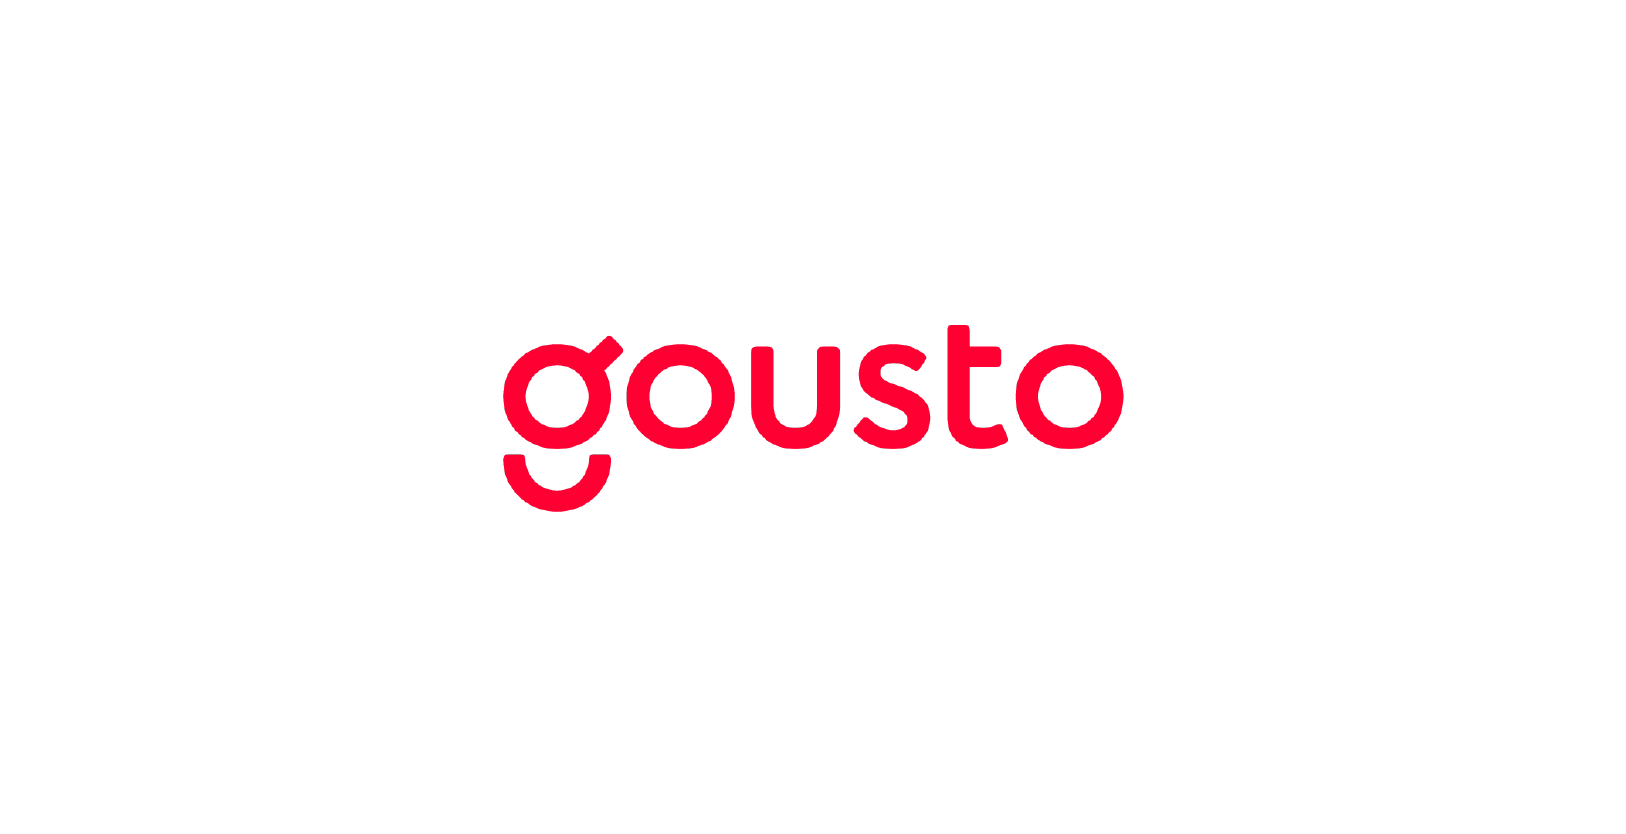 VisionFund Portfolio Company Gousto's Logo